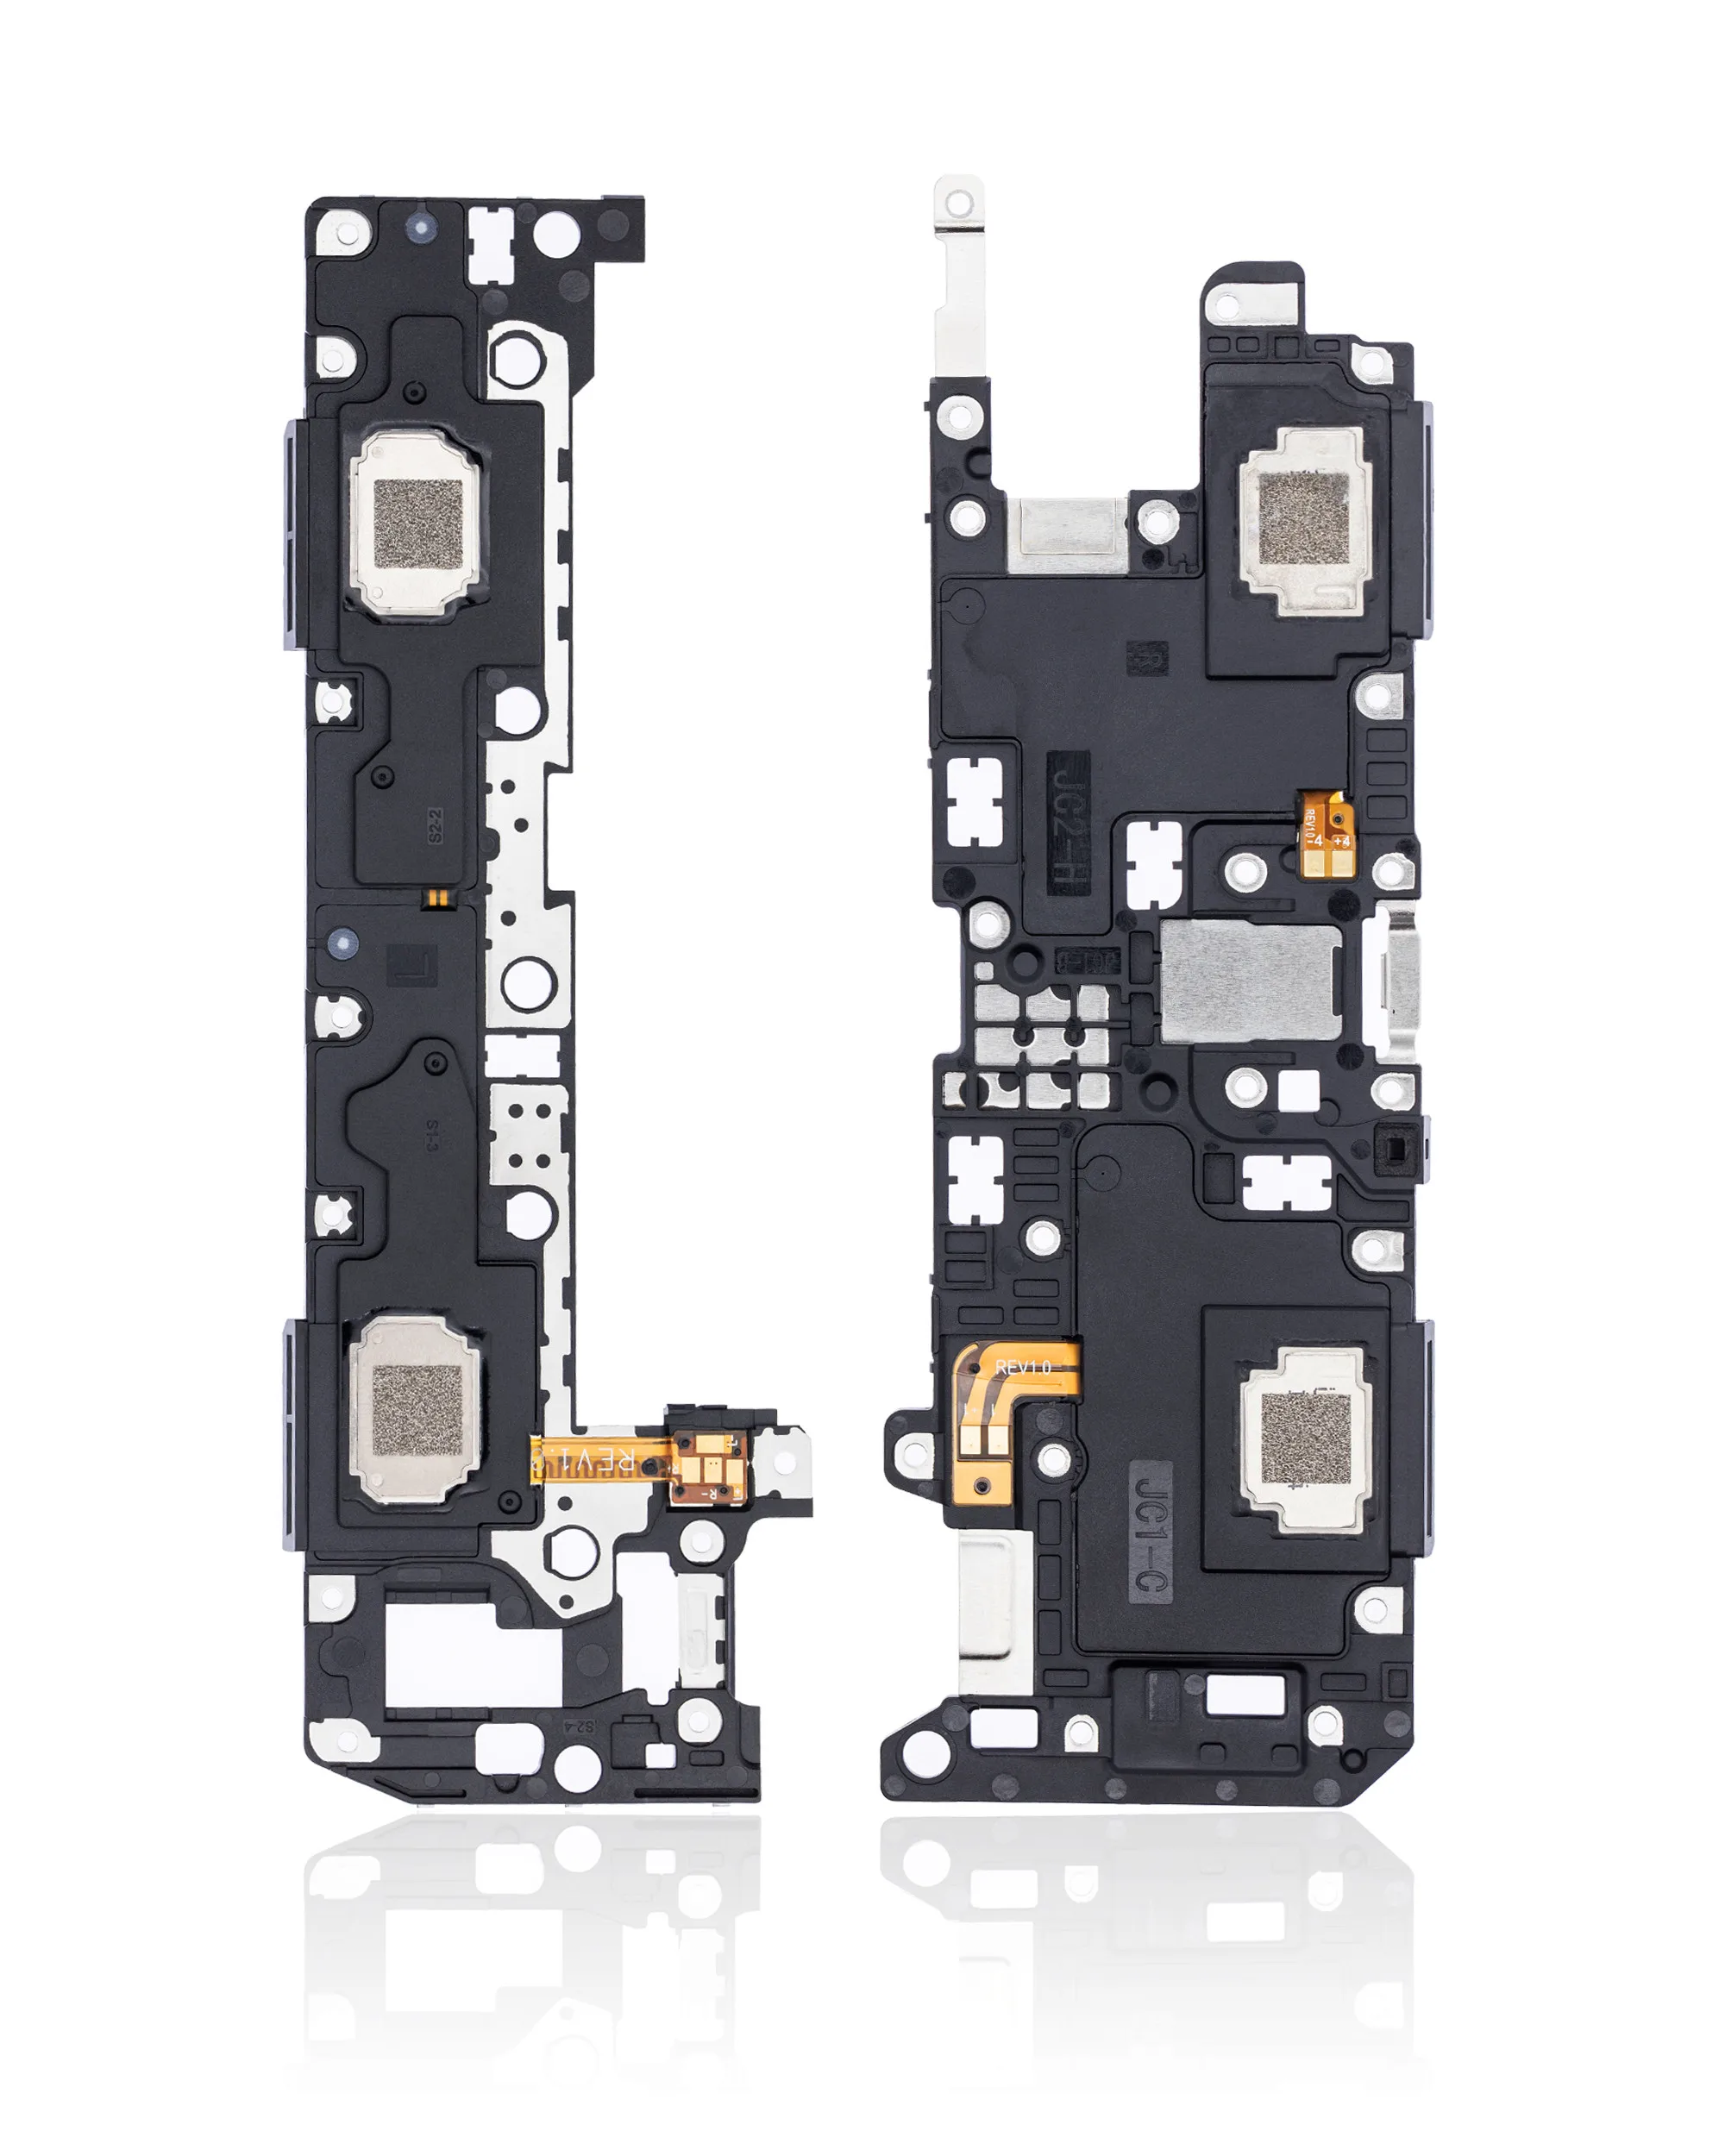 Гибкий кабель громкоговорителя для Samsung Galaxy Tab A7 10.4 T500 T505 2020 (2ШТ)